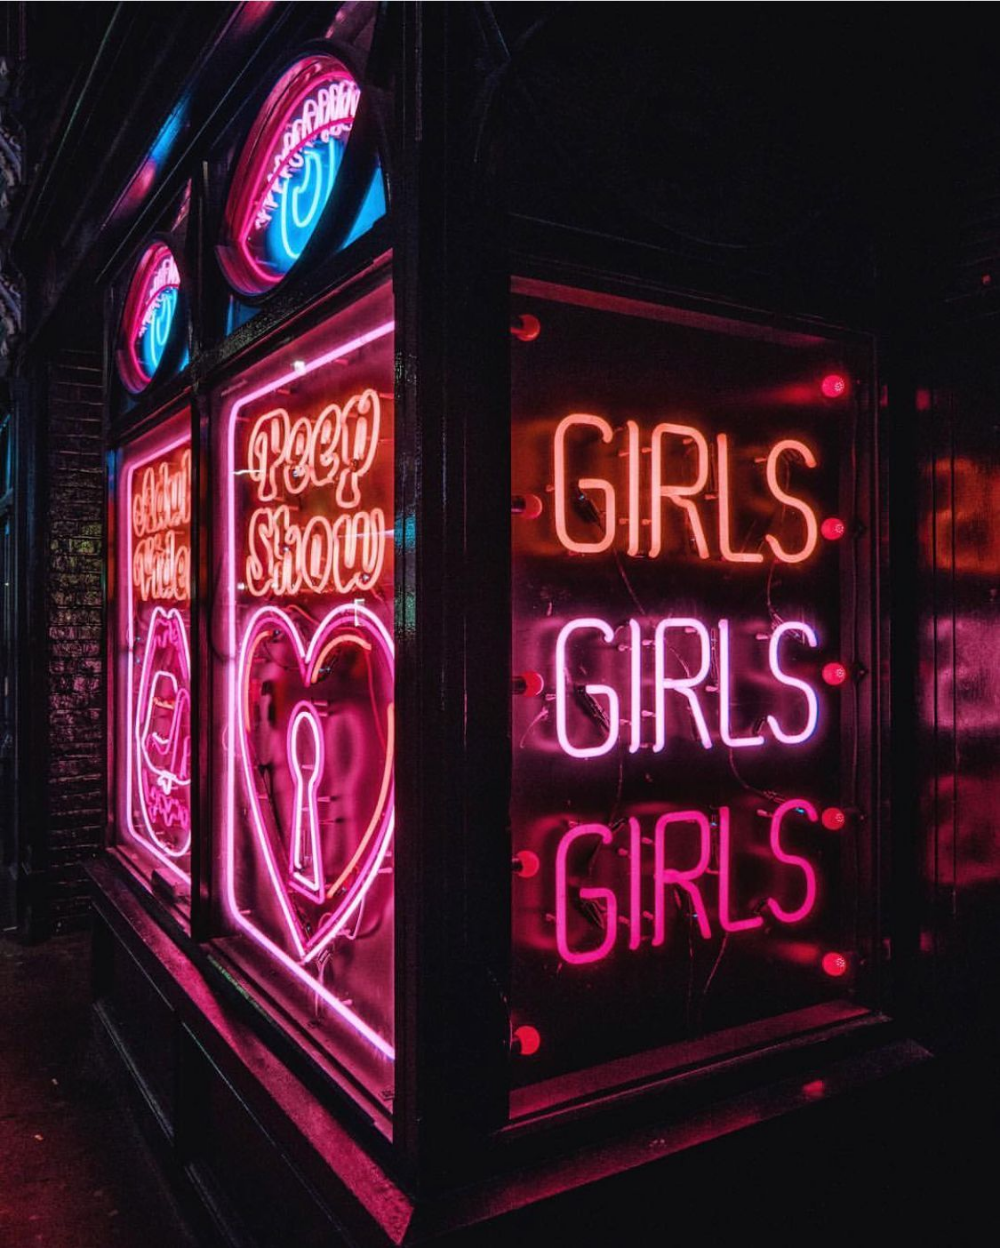 Neon girls pop art poster posters. Pop art posters, Neon wallpaper, Neon girl